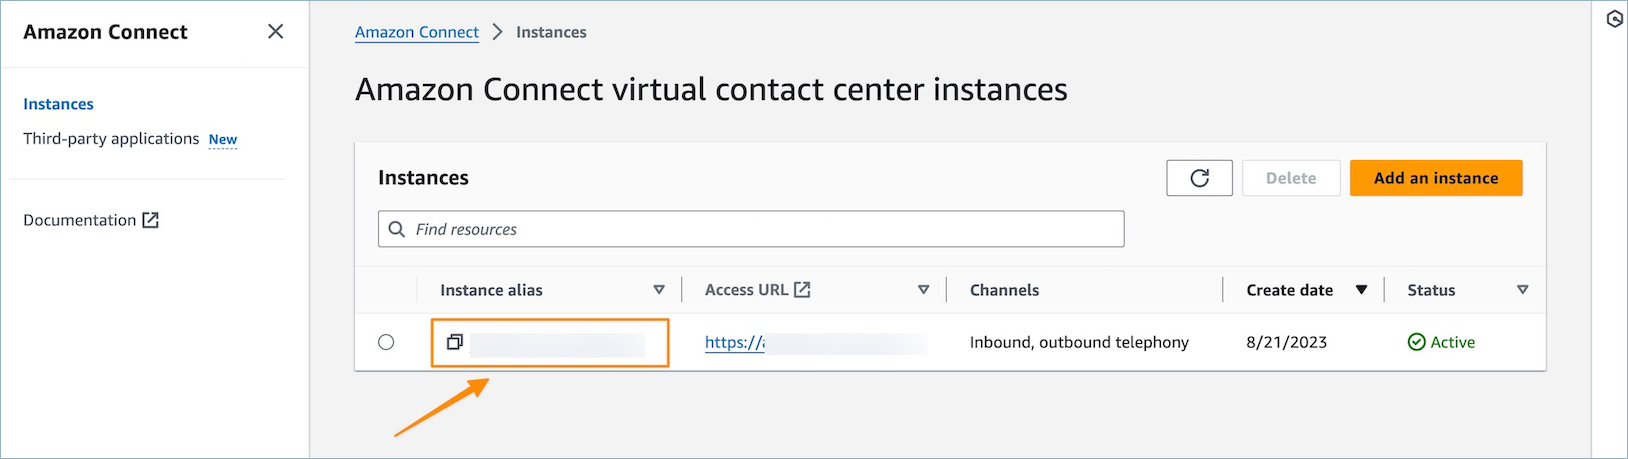 La página de instancias del centro de contacto virtual de Amazon Connect.